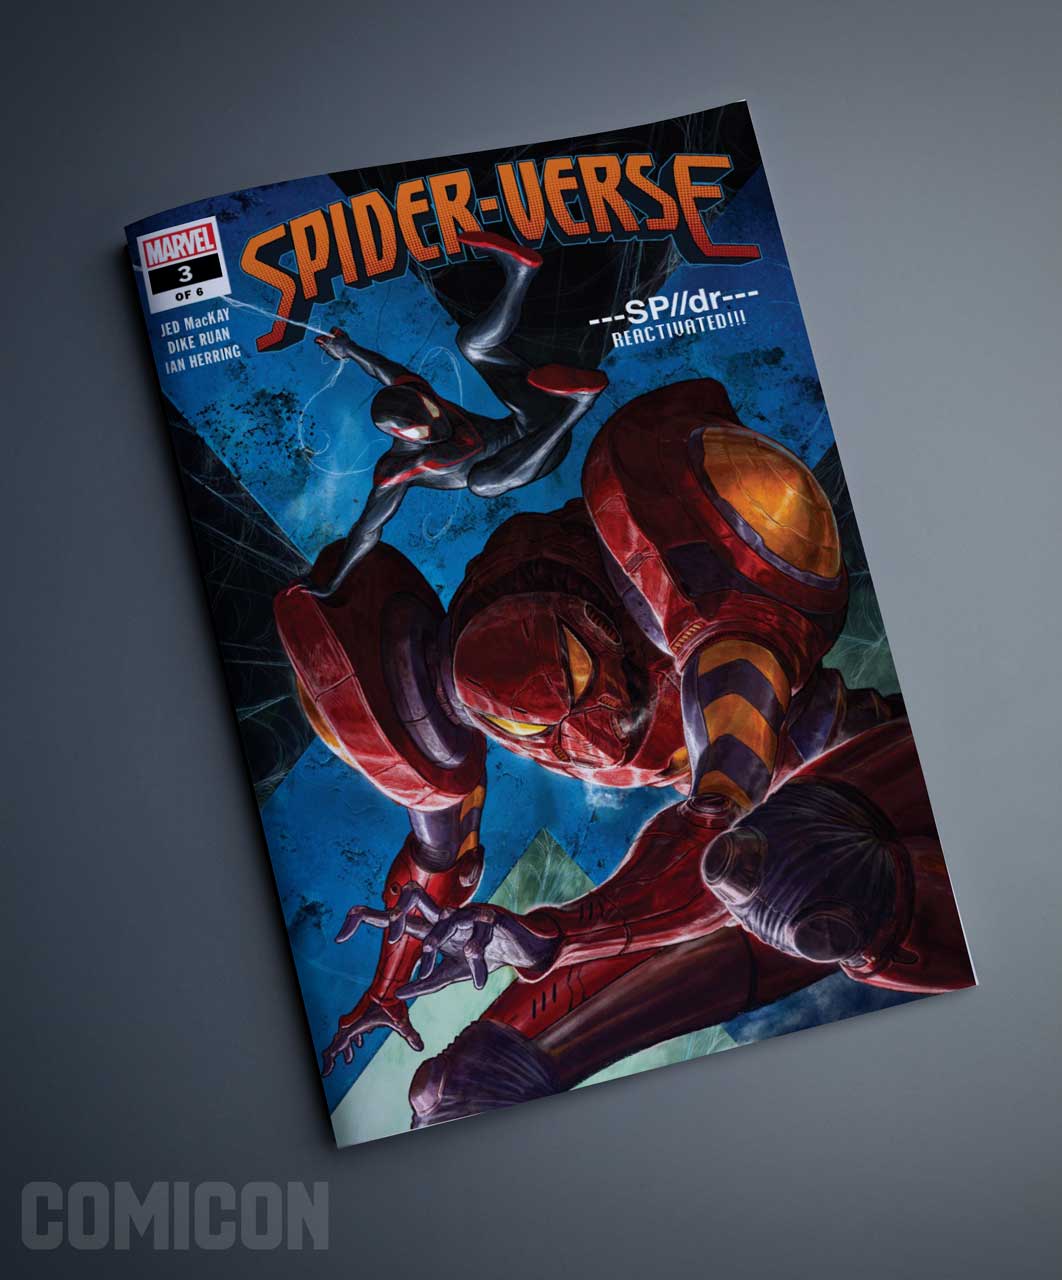 کمیک Spider-Verse 2019 (جلد سوم)